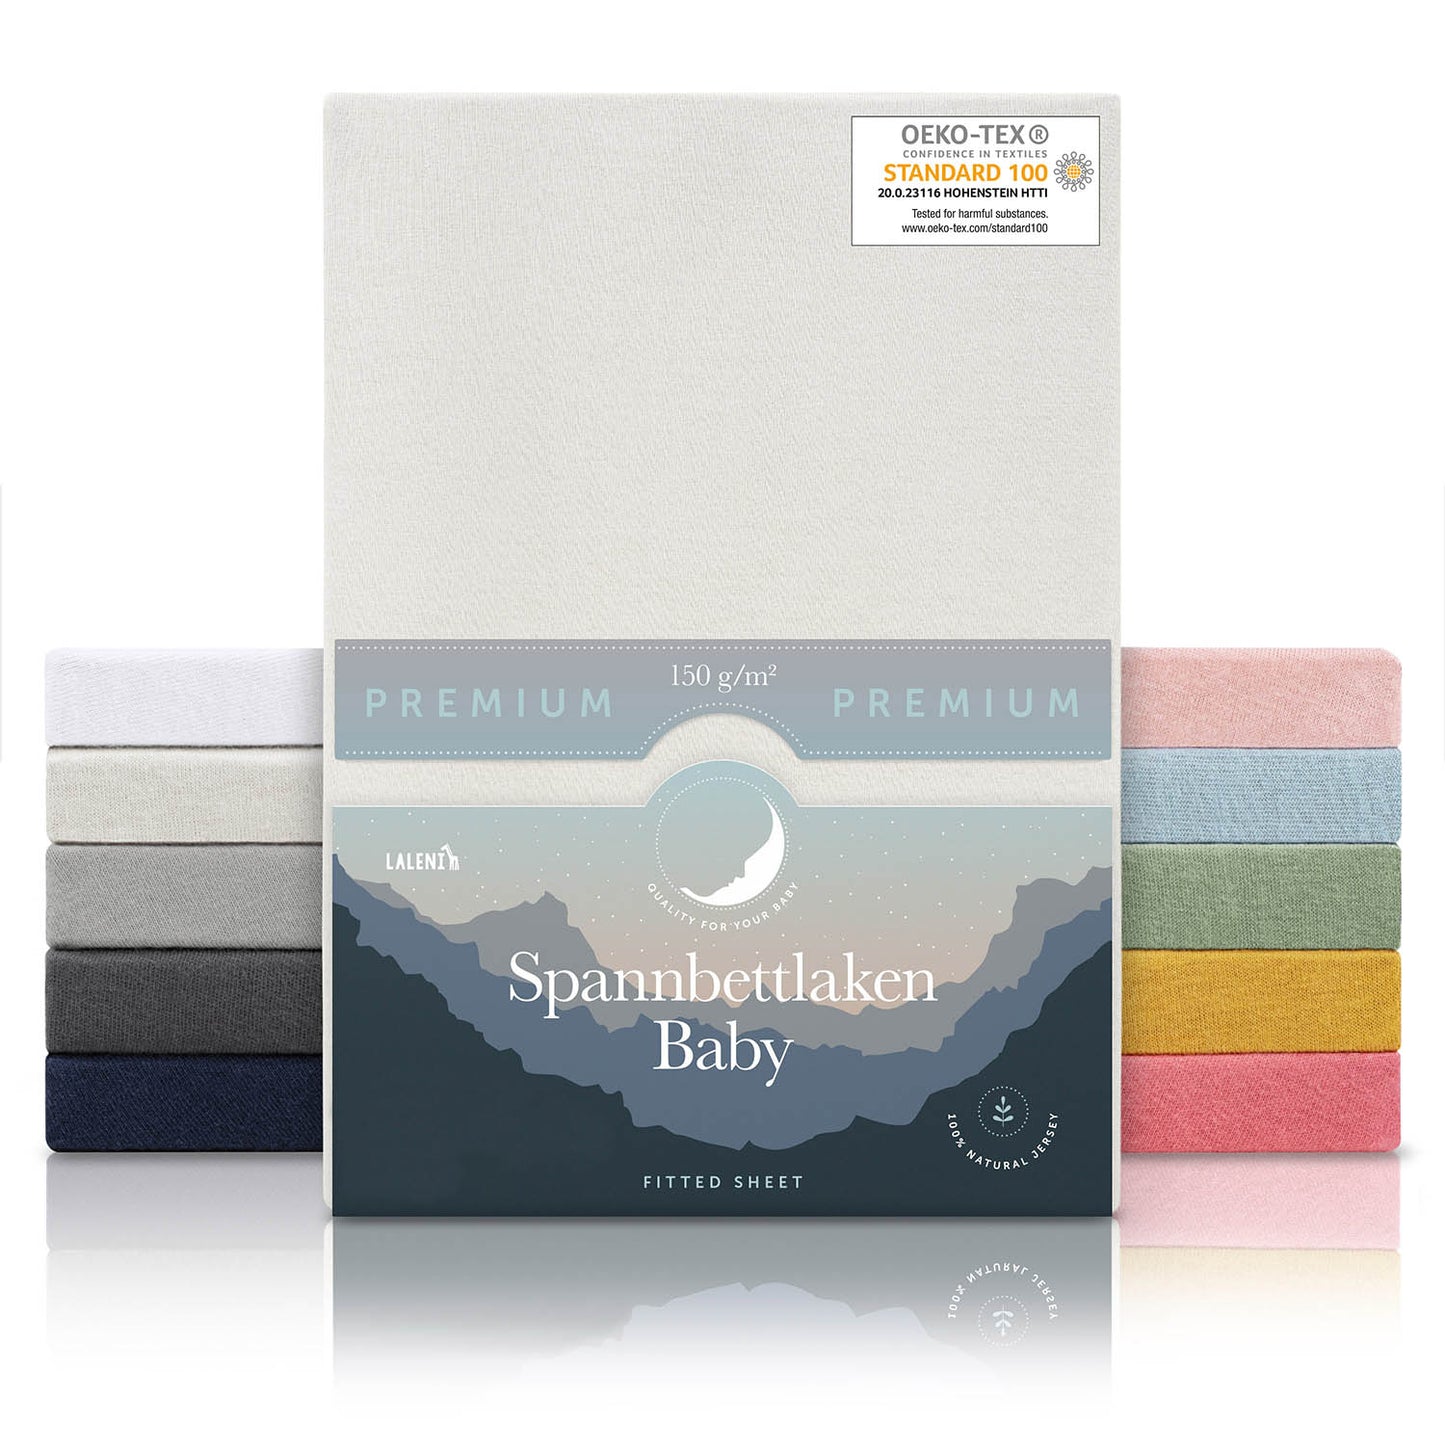 Verpackung von elfenbeinfarbenen Baby-Spannbettlaken mit OEKO-TEX Siegel und Angabe von 150 g/m² Qualität in verschiedenen Farben präsentiert